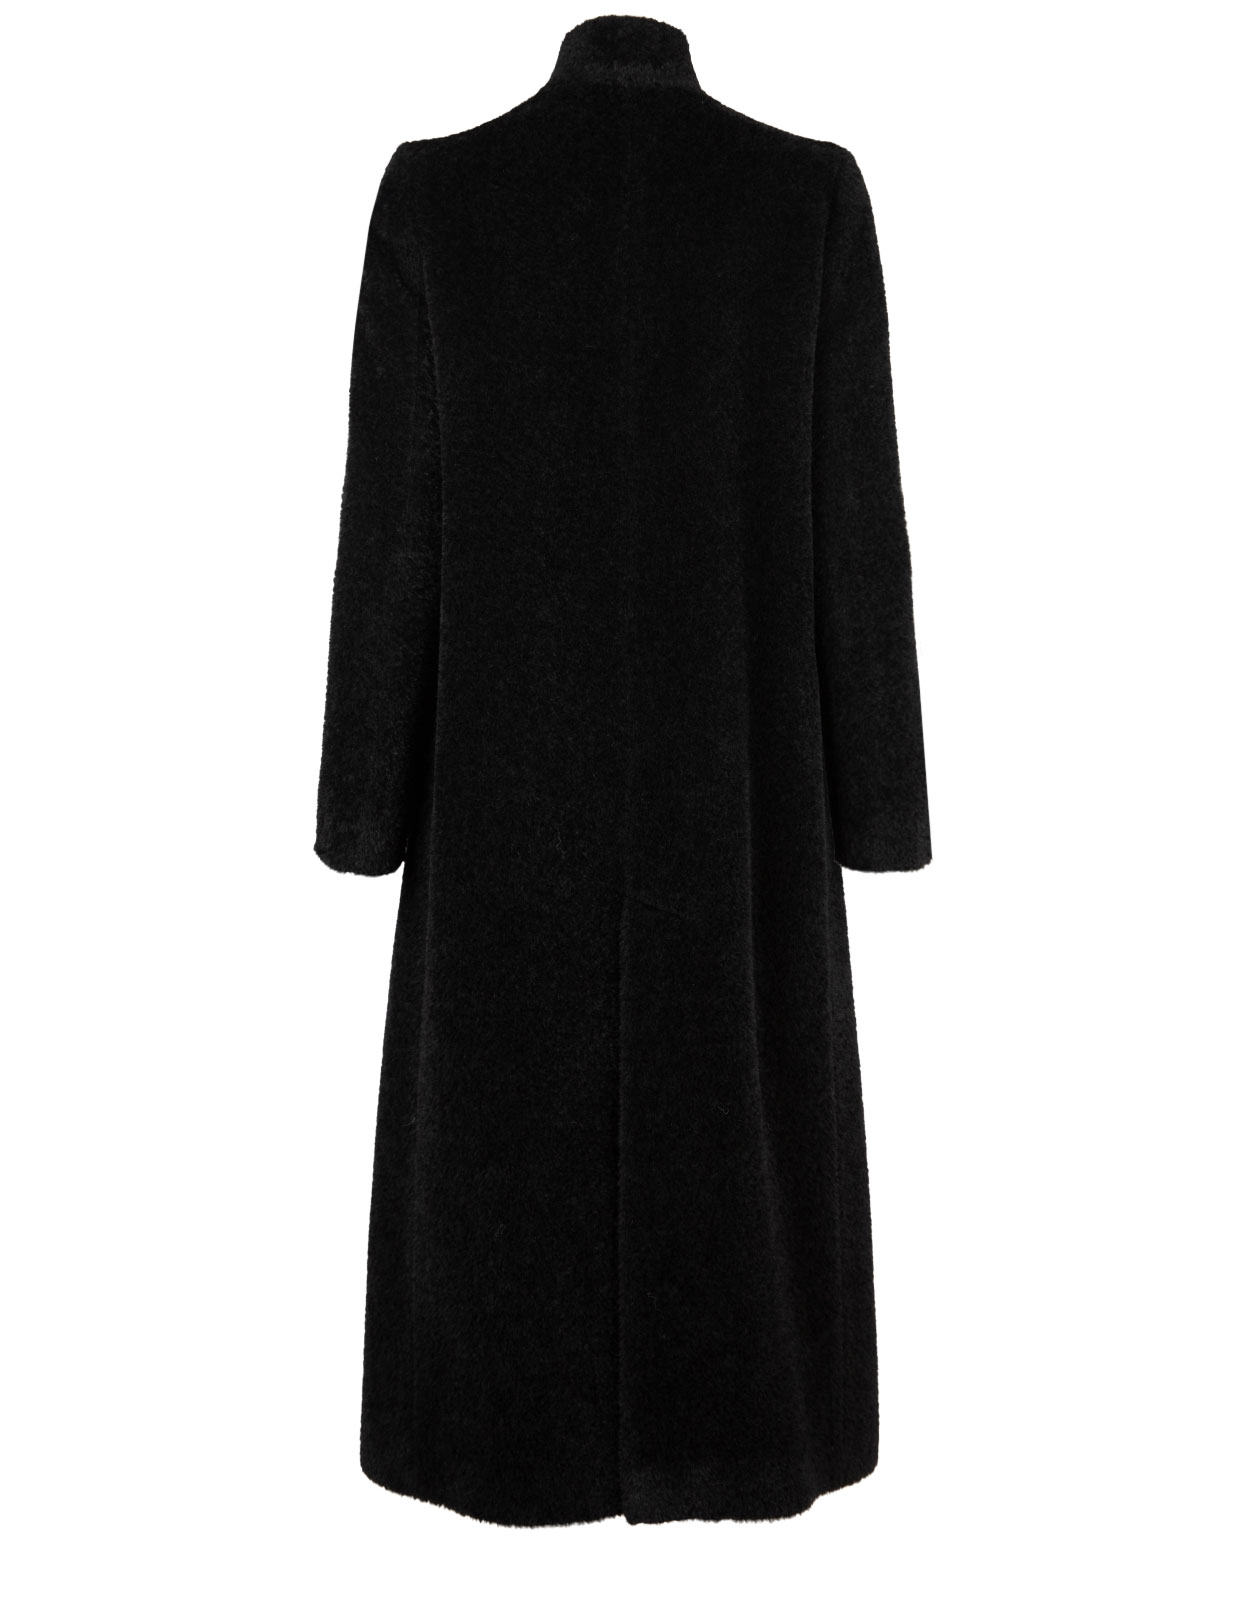 Alpacka Coat Black